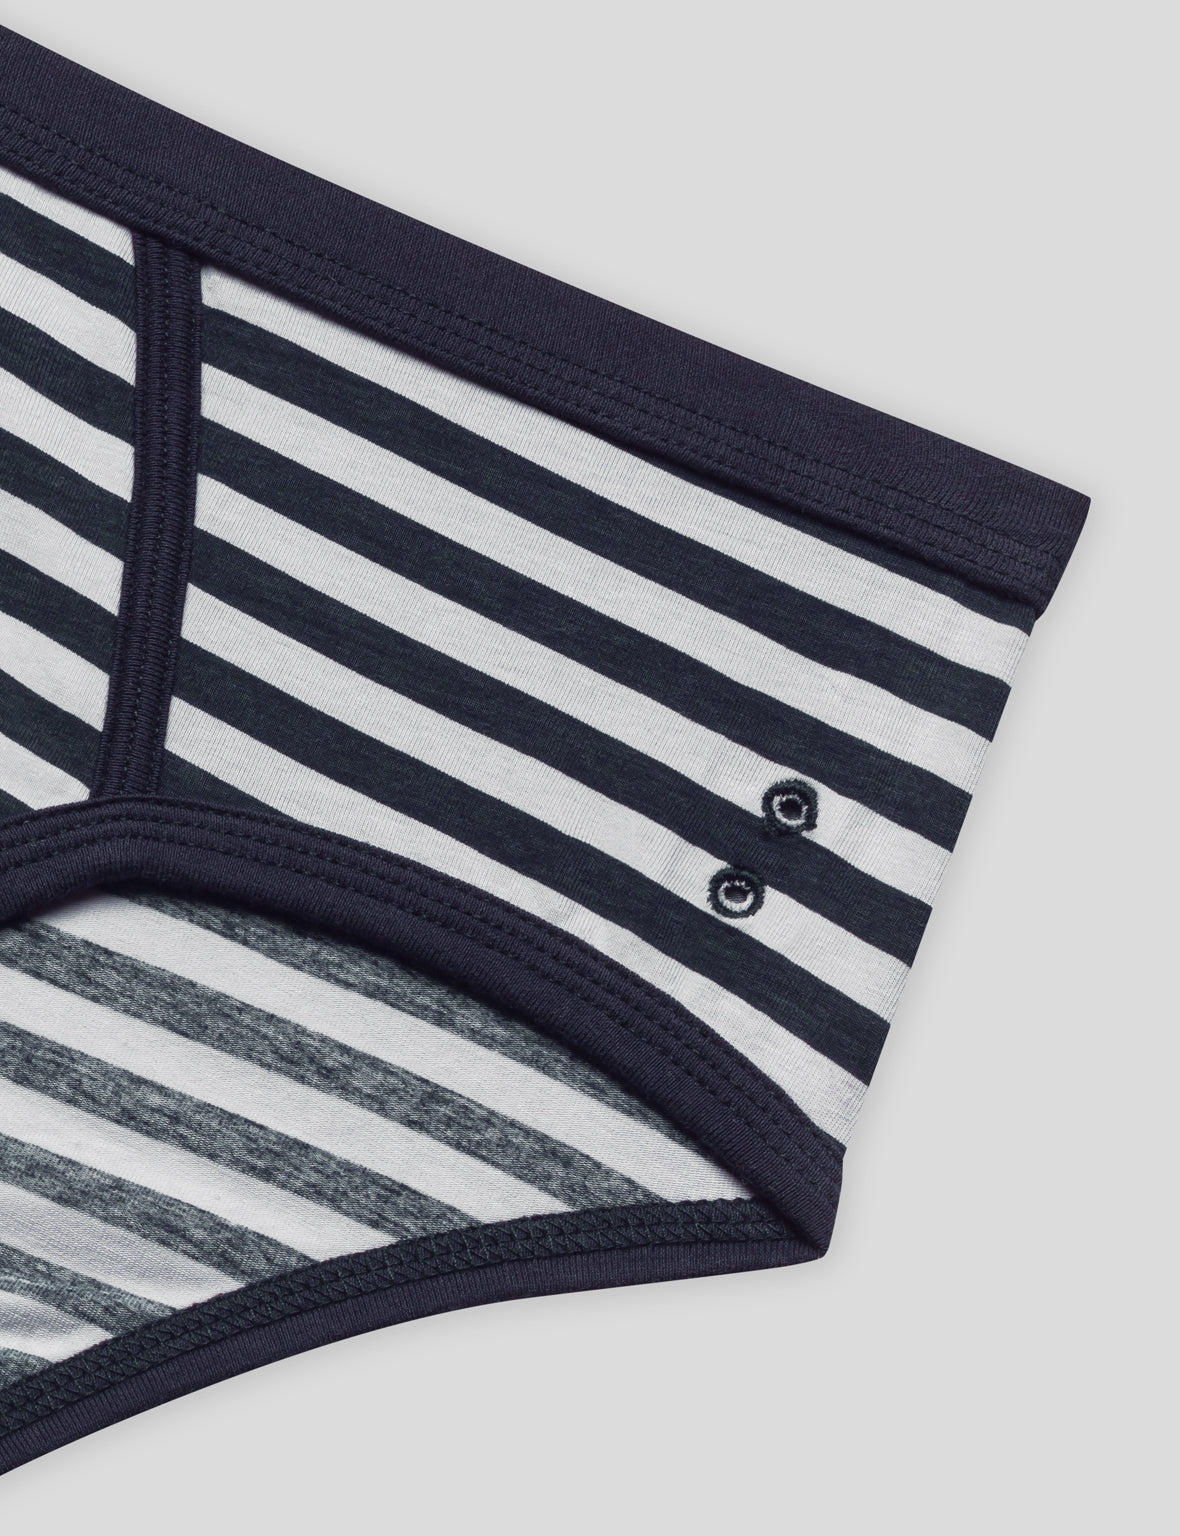 Striped Y-Front Briefs: Navy/White